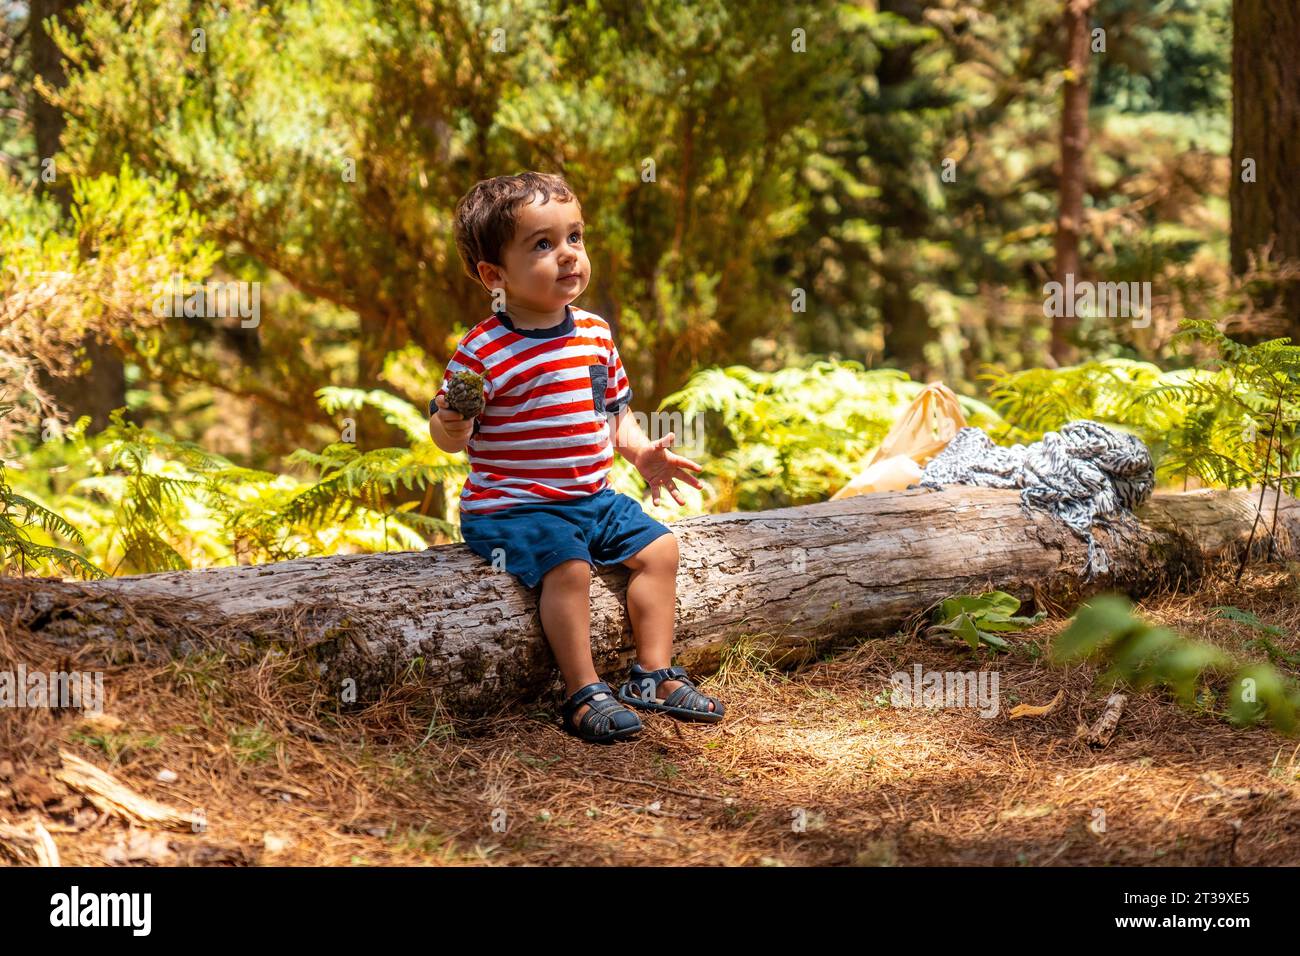 Porträt eines Jungen, der auf einem Baum in der Natur neben Pinienbäumen sitzt, Madeira. Portogallo Foto Stock